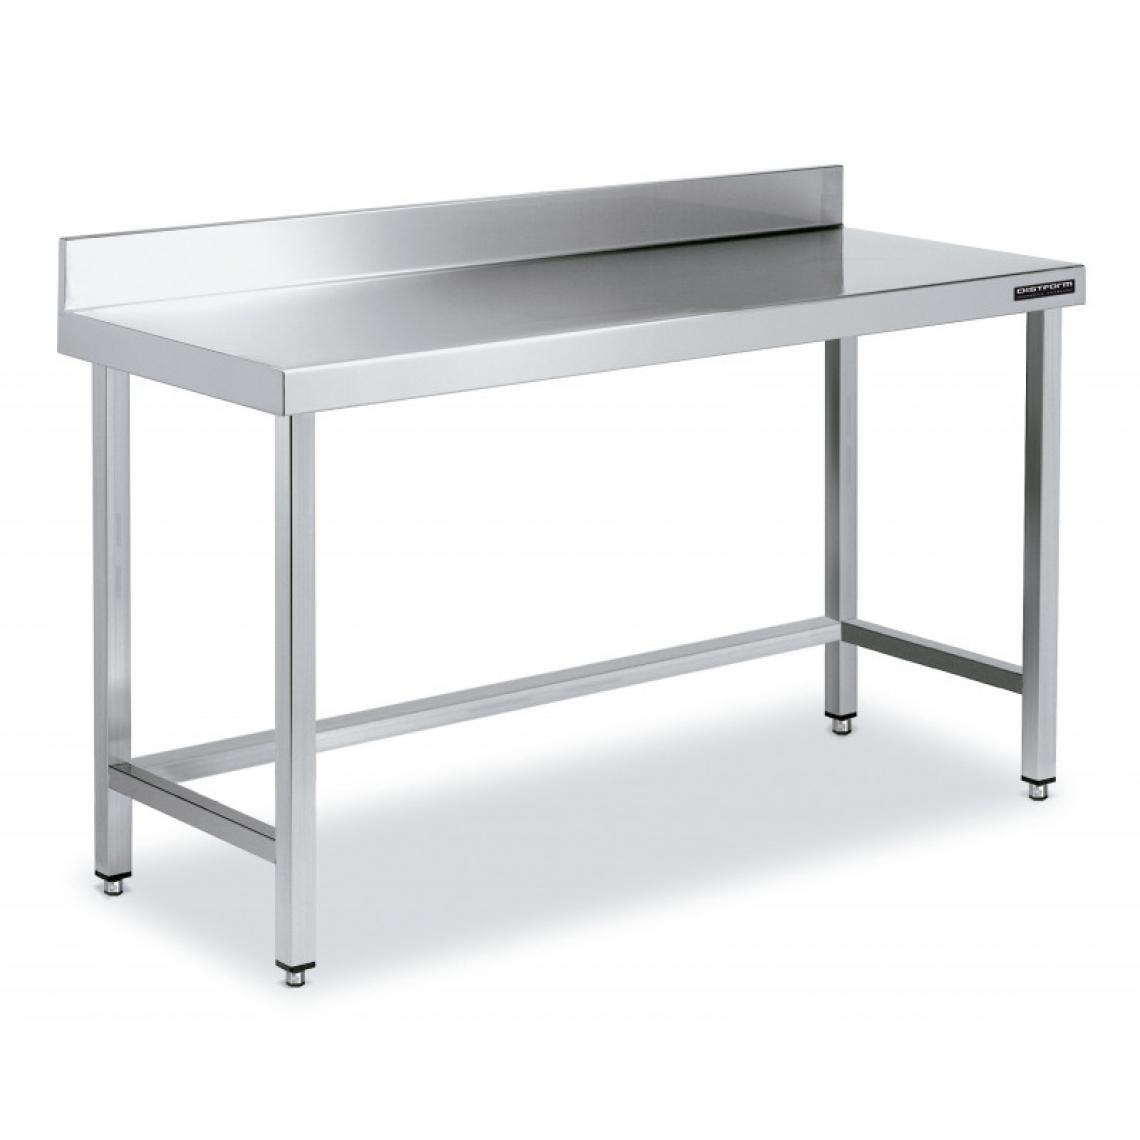 DISTFORM - Table de Travail Adossée Inox avec Renforts - Gamme 600 - Hauteur 600 - Distform - Acier inoxydable1300x600 - Tables à manger